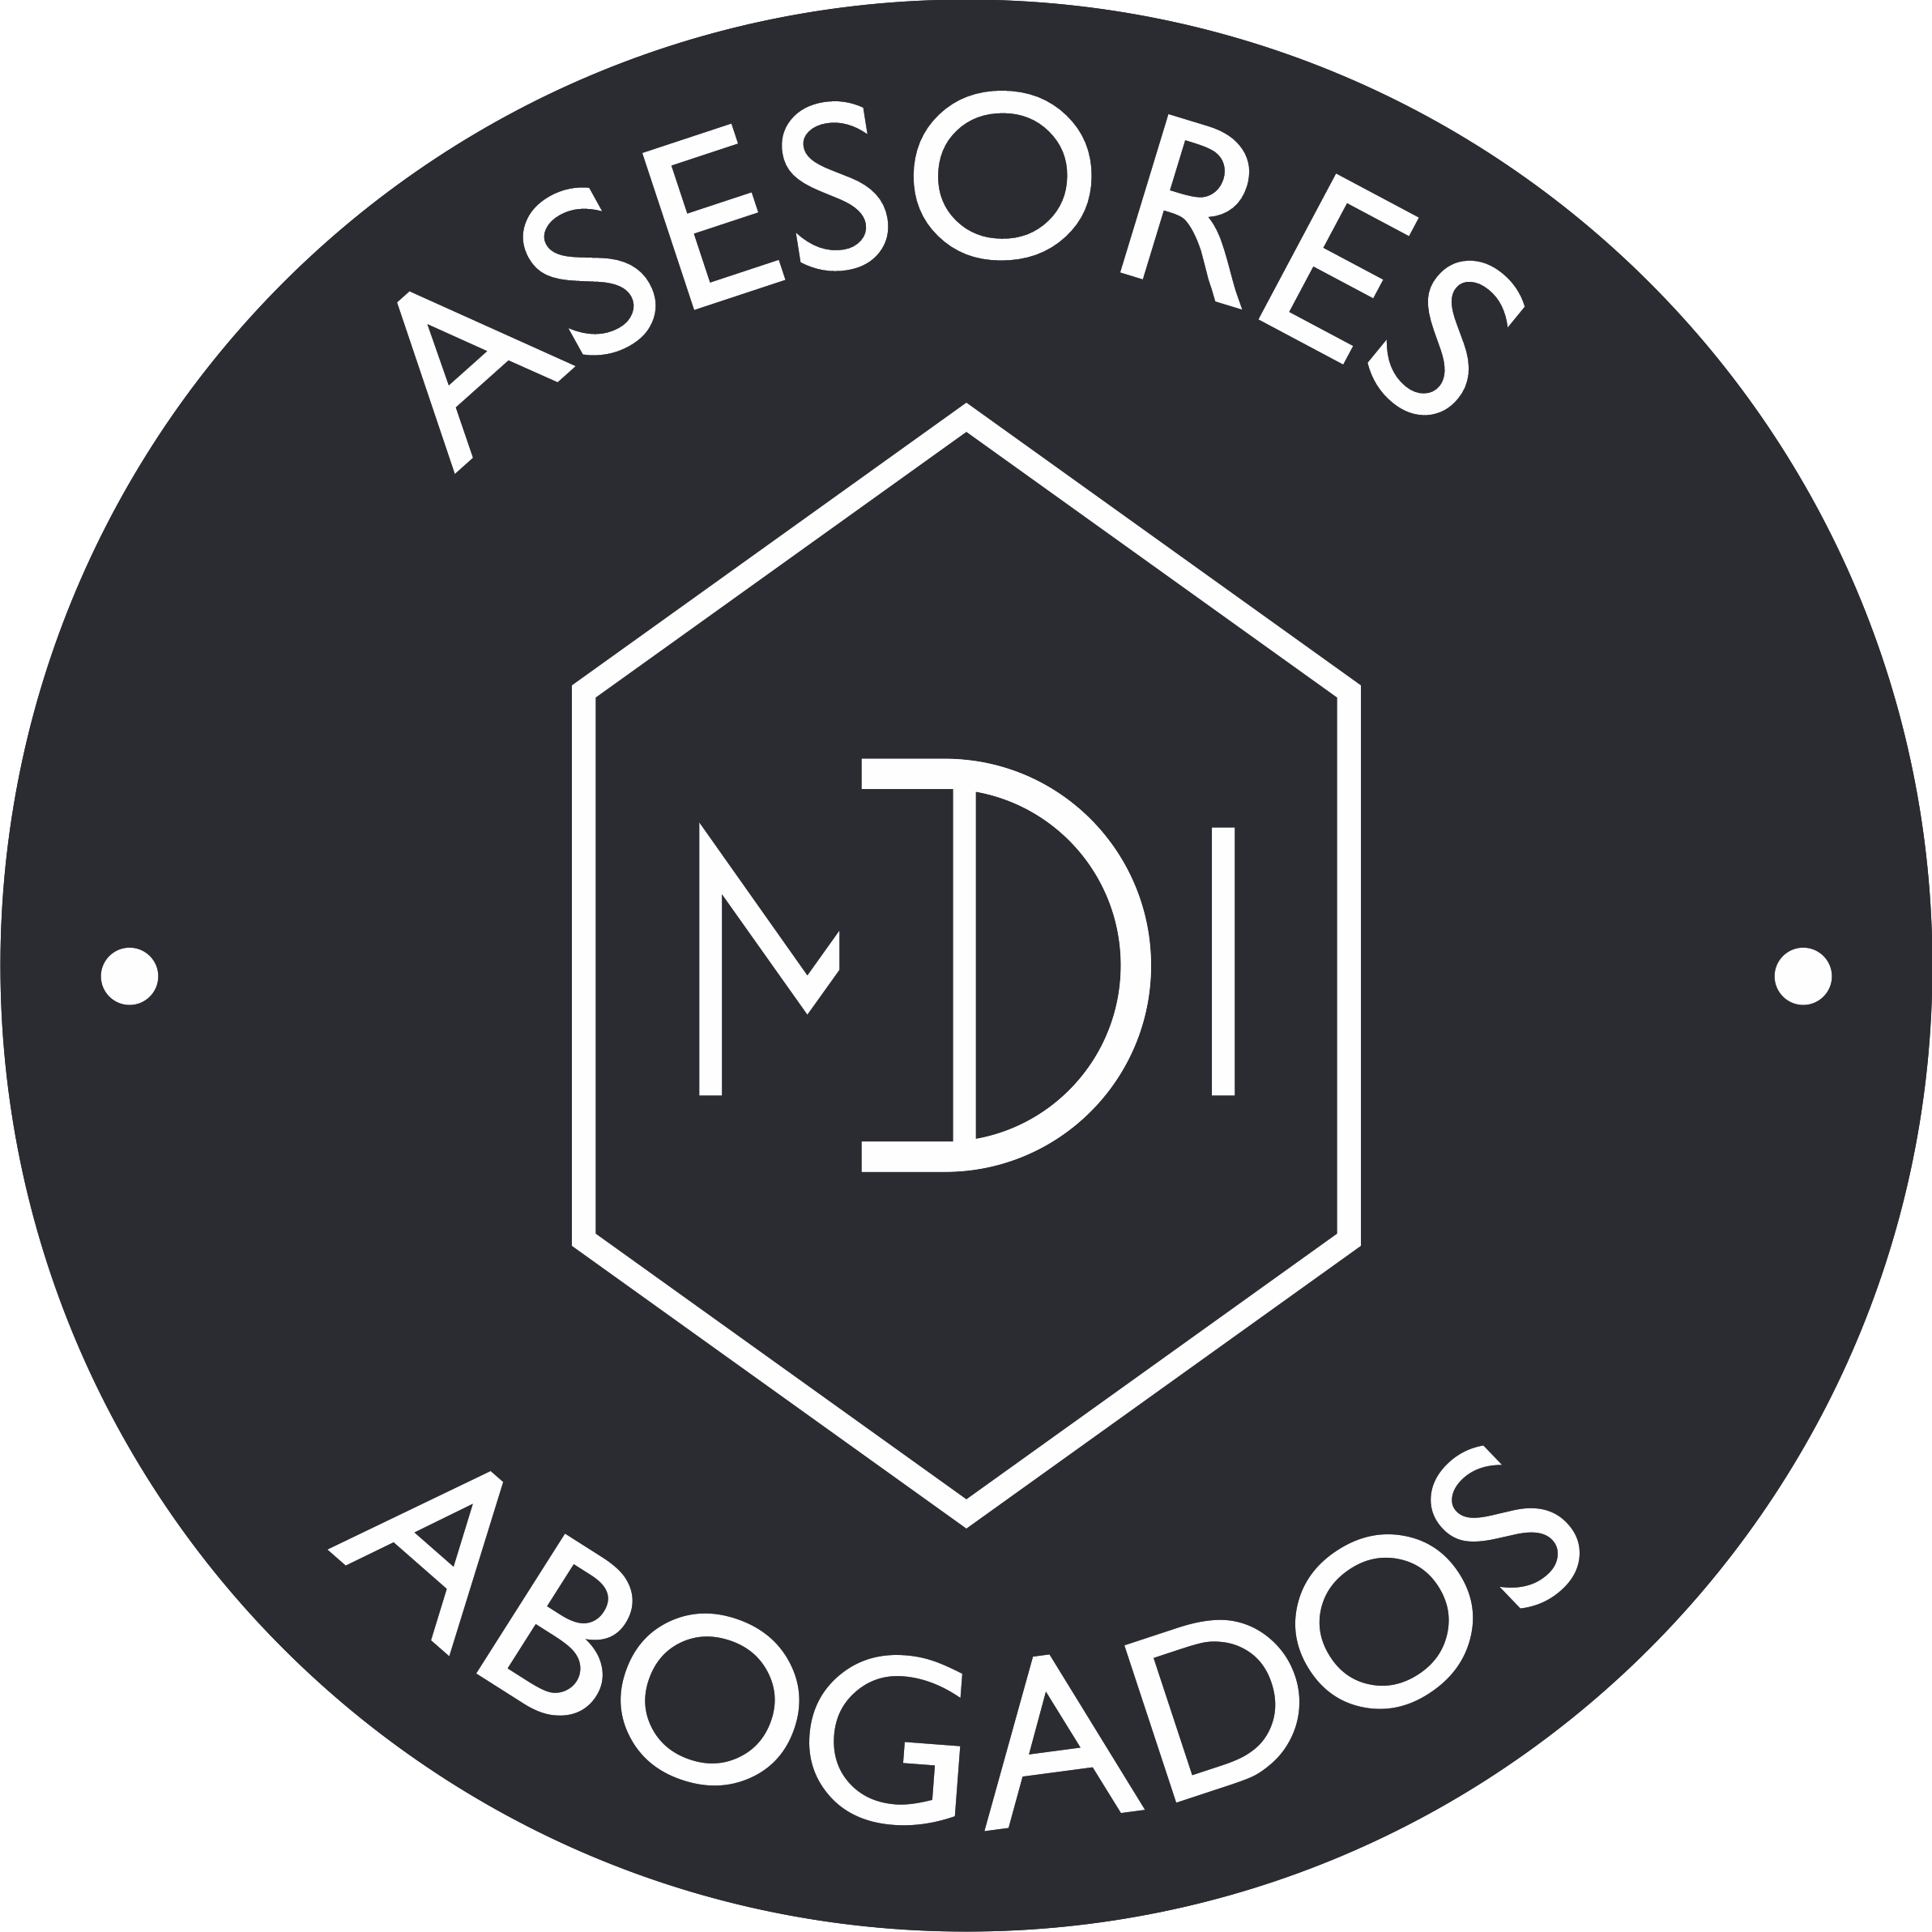 M.D.I. ASESORES Y ABOGADOS